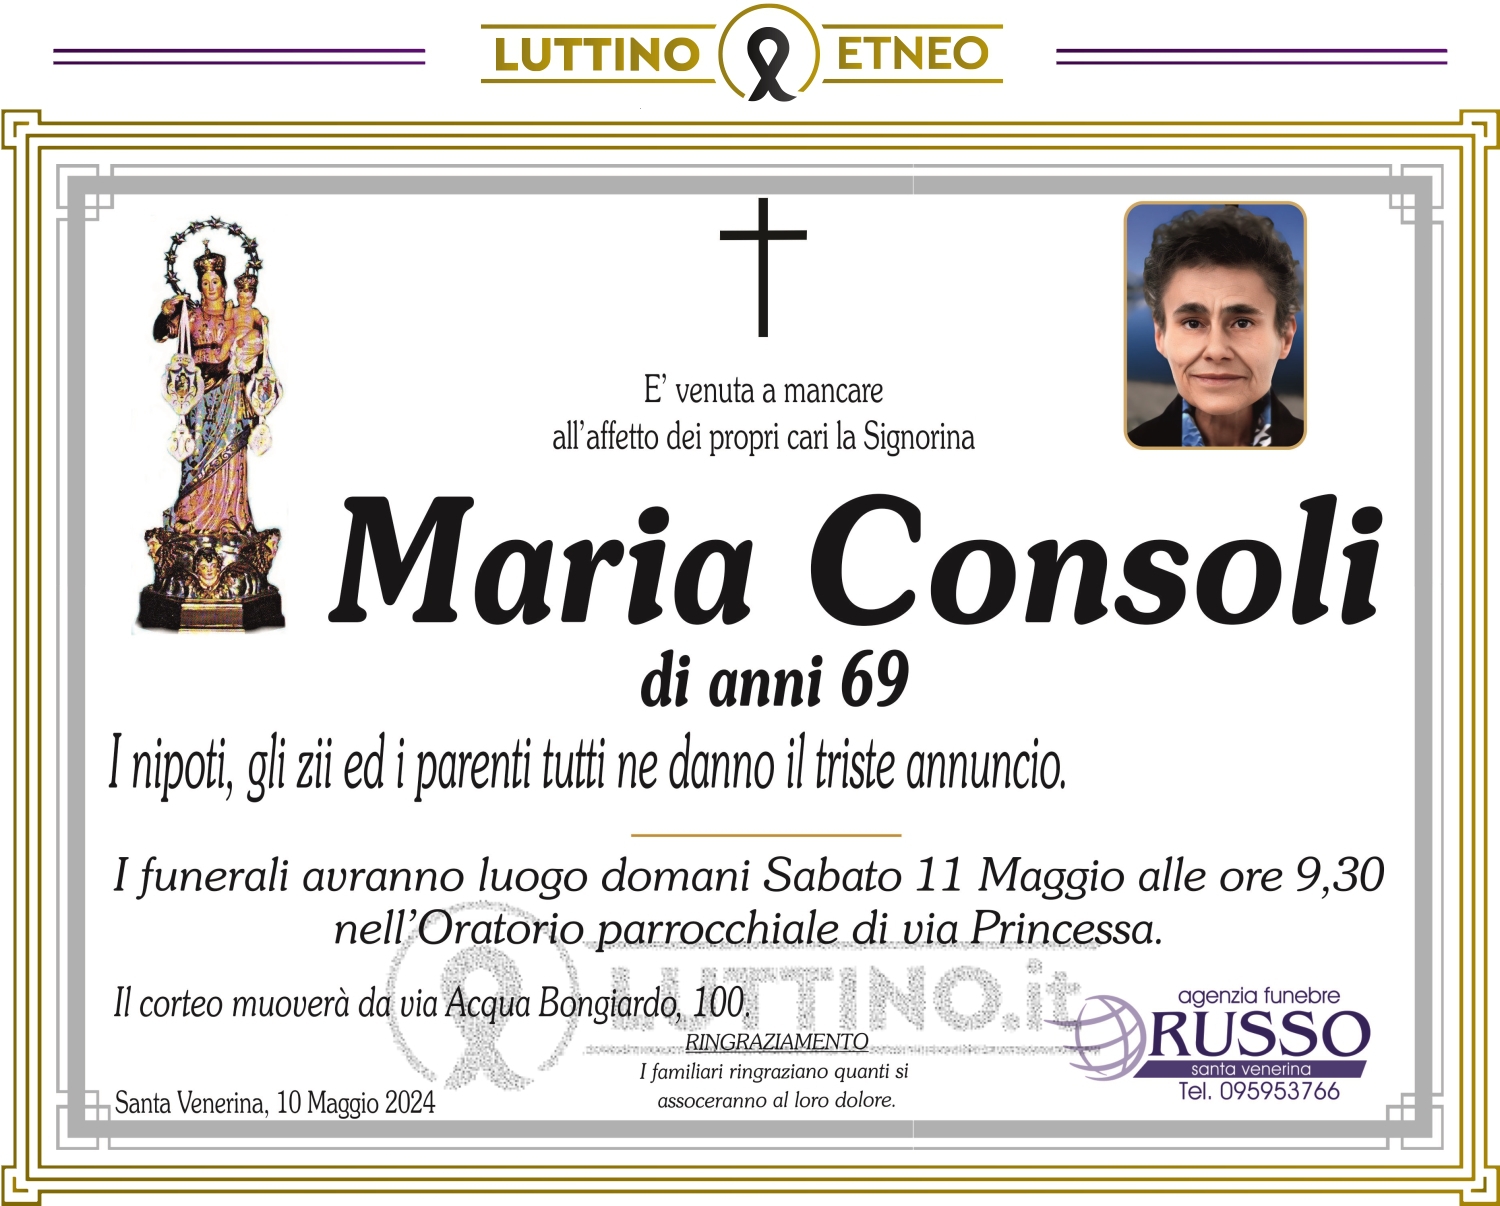 Maria Consoli